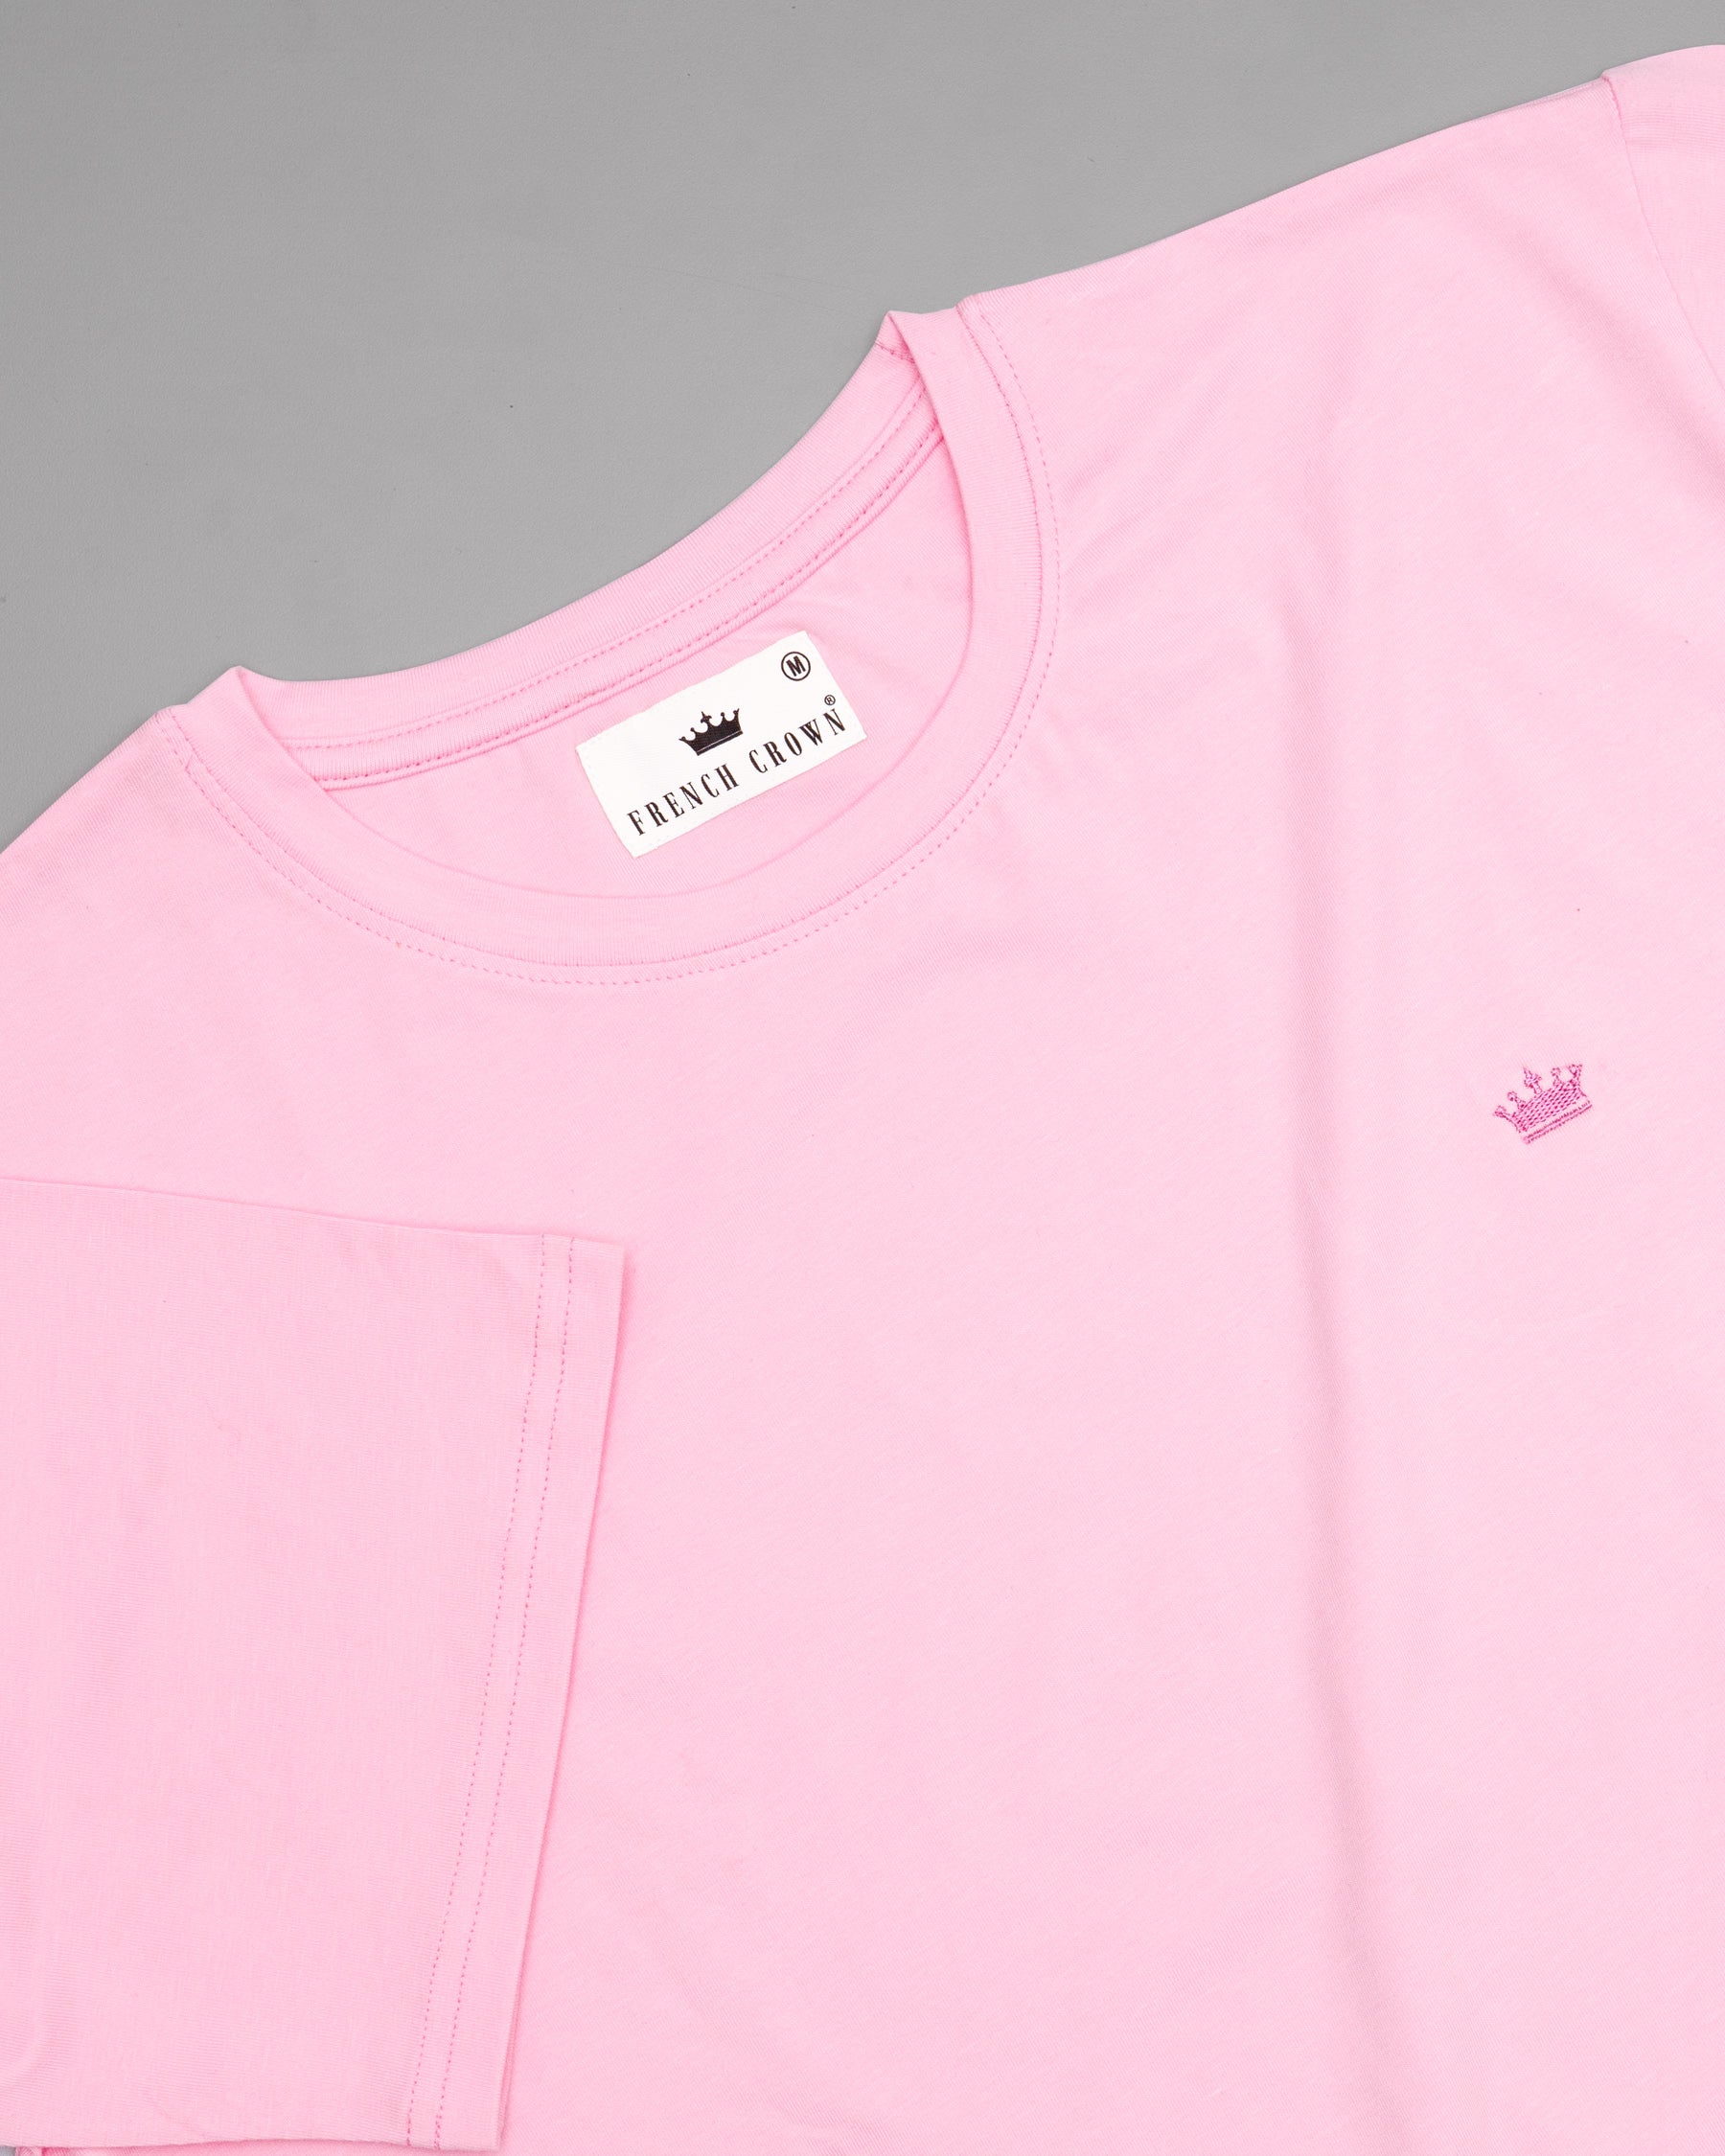 Ballet Slipper Pink Super Soft Premium Organic Cotton Jersey T-shirt TS103-S, TS103-M, TS103-L, TS103-XL, TS103-XXL, TS103-3XL, TS103-4XL